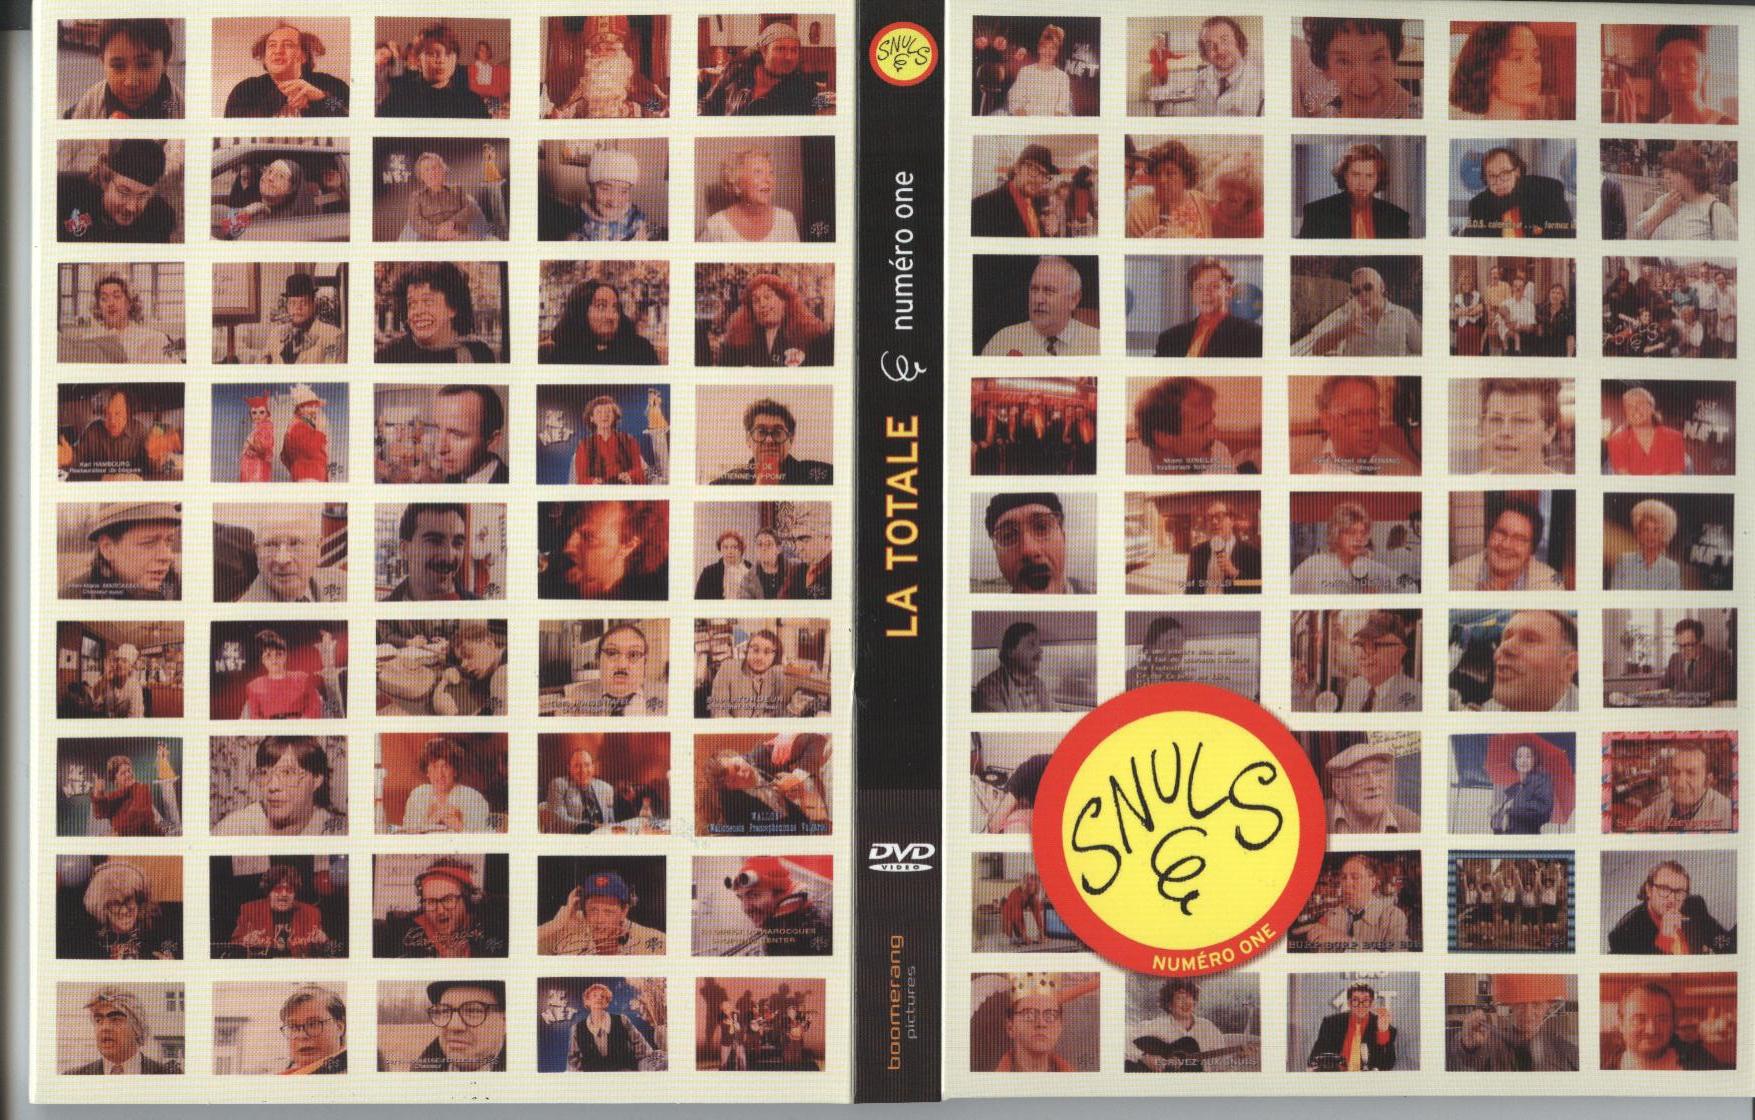 Jaquette DVD Les snuls vol 1